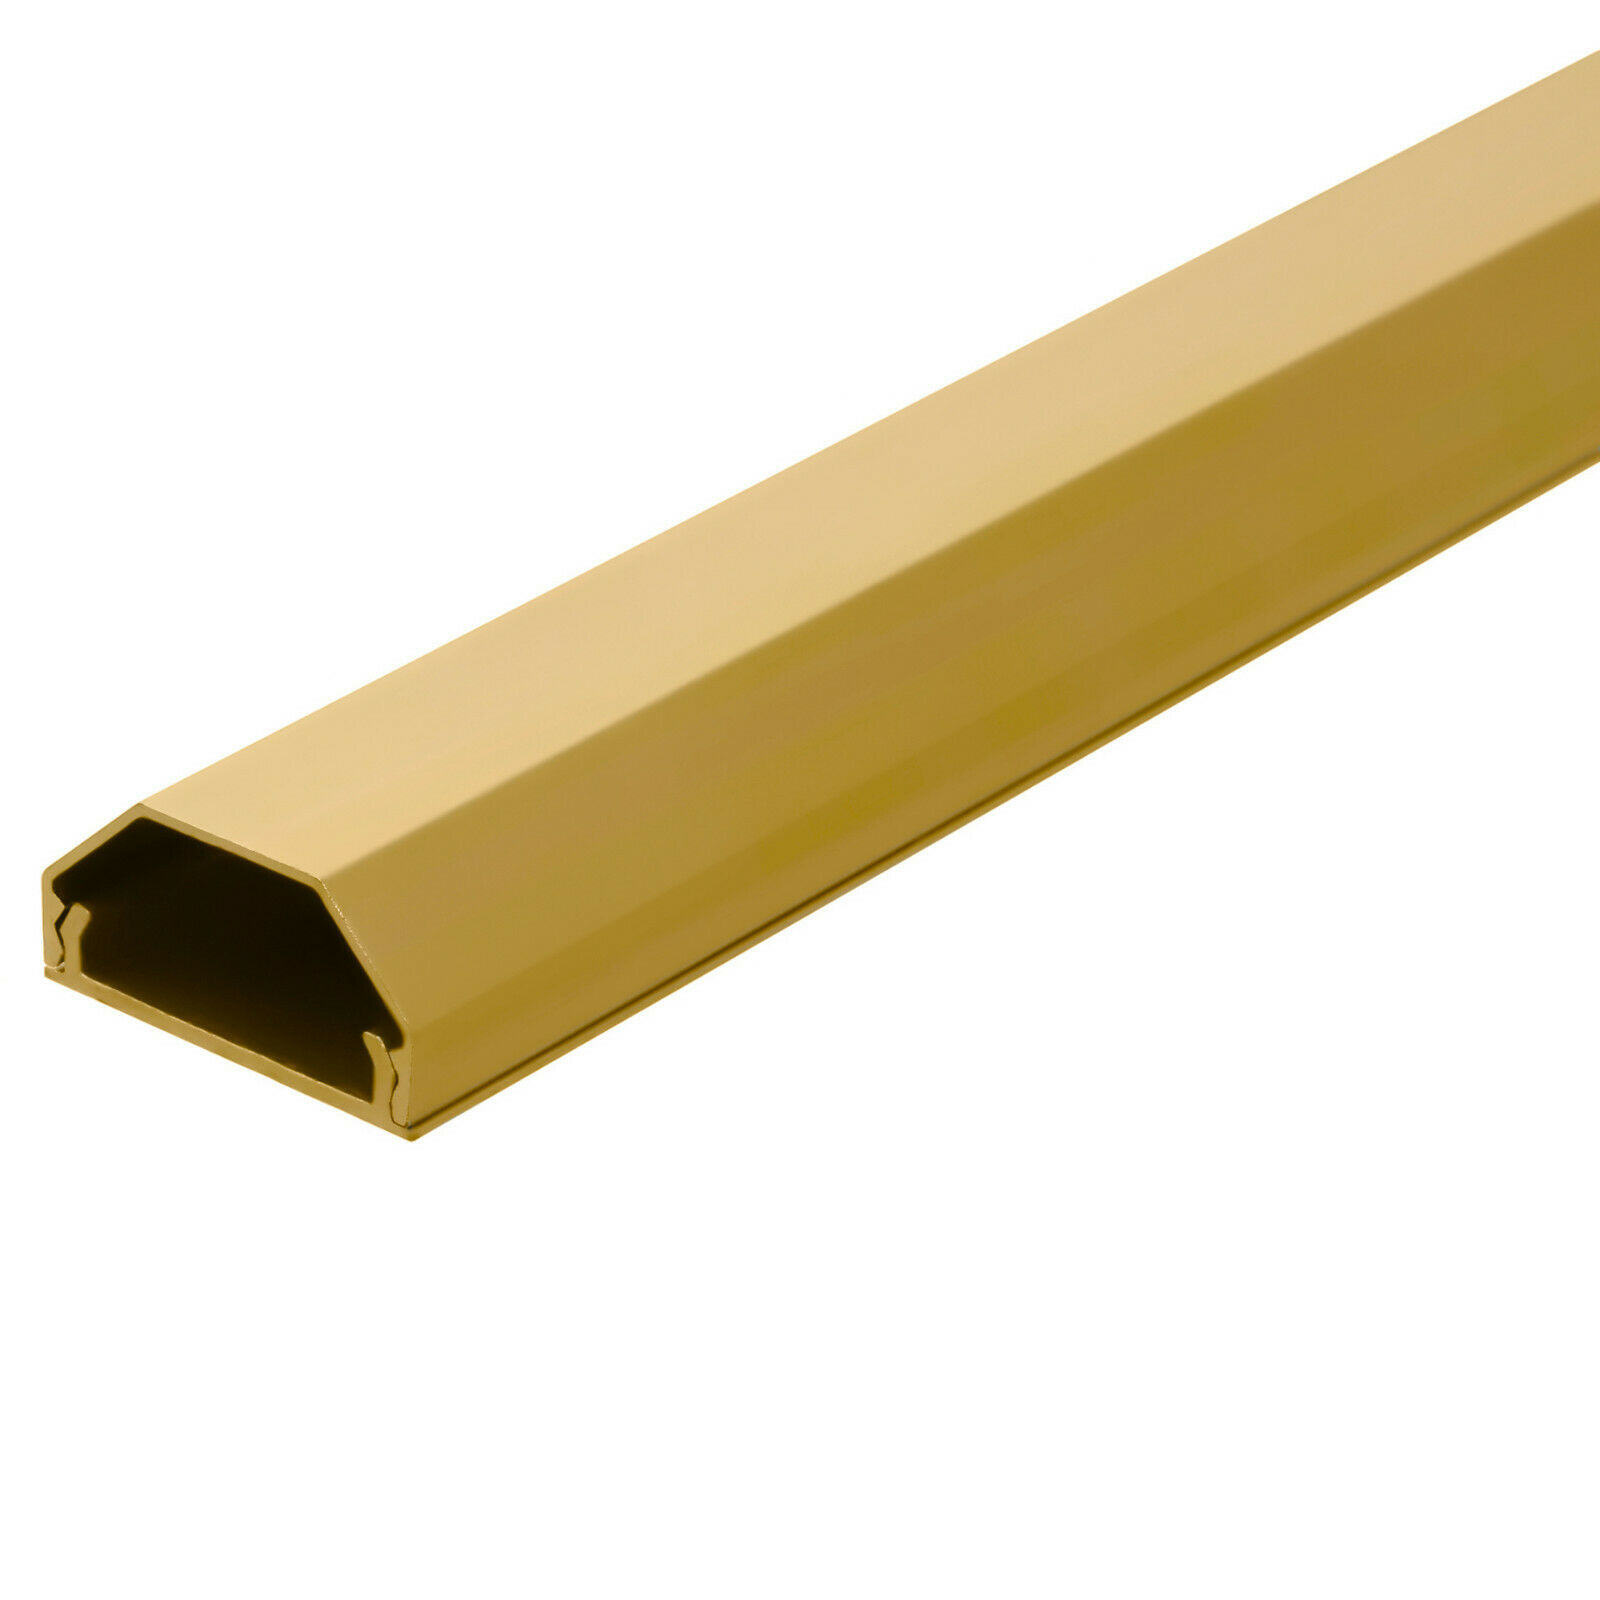 Hliníkový profil / kabelová lišta 75 cm 2. jakost Barva: Zlatá, Samolepicí páska: Ano, Šířka profilu: 33 mm